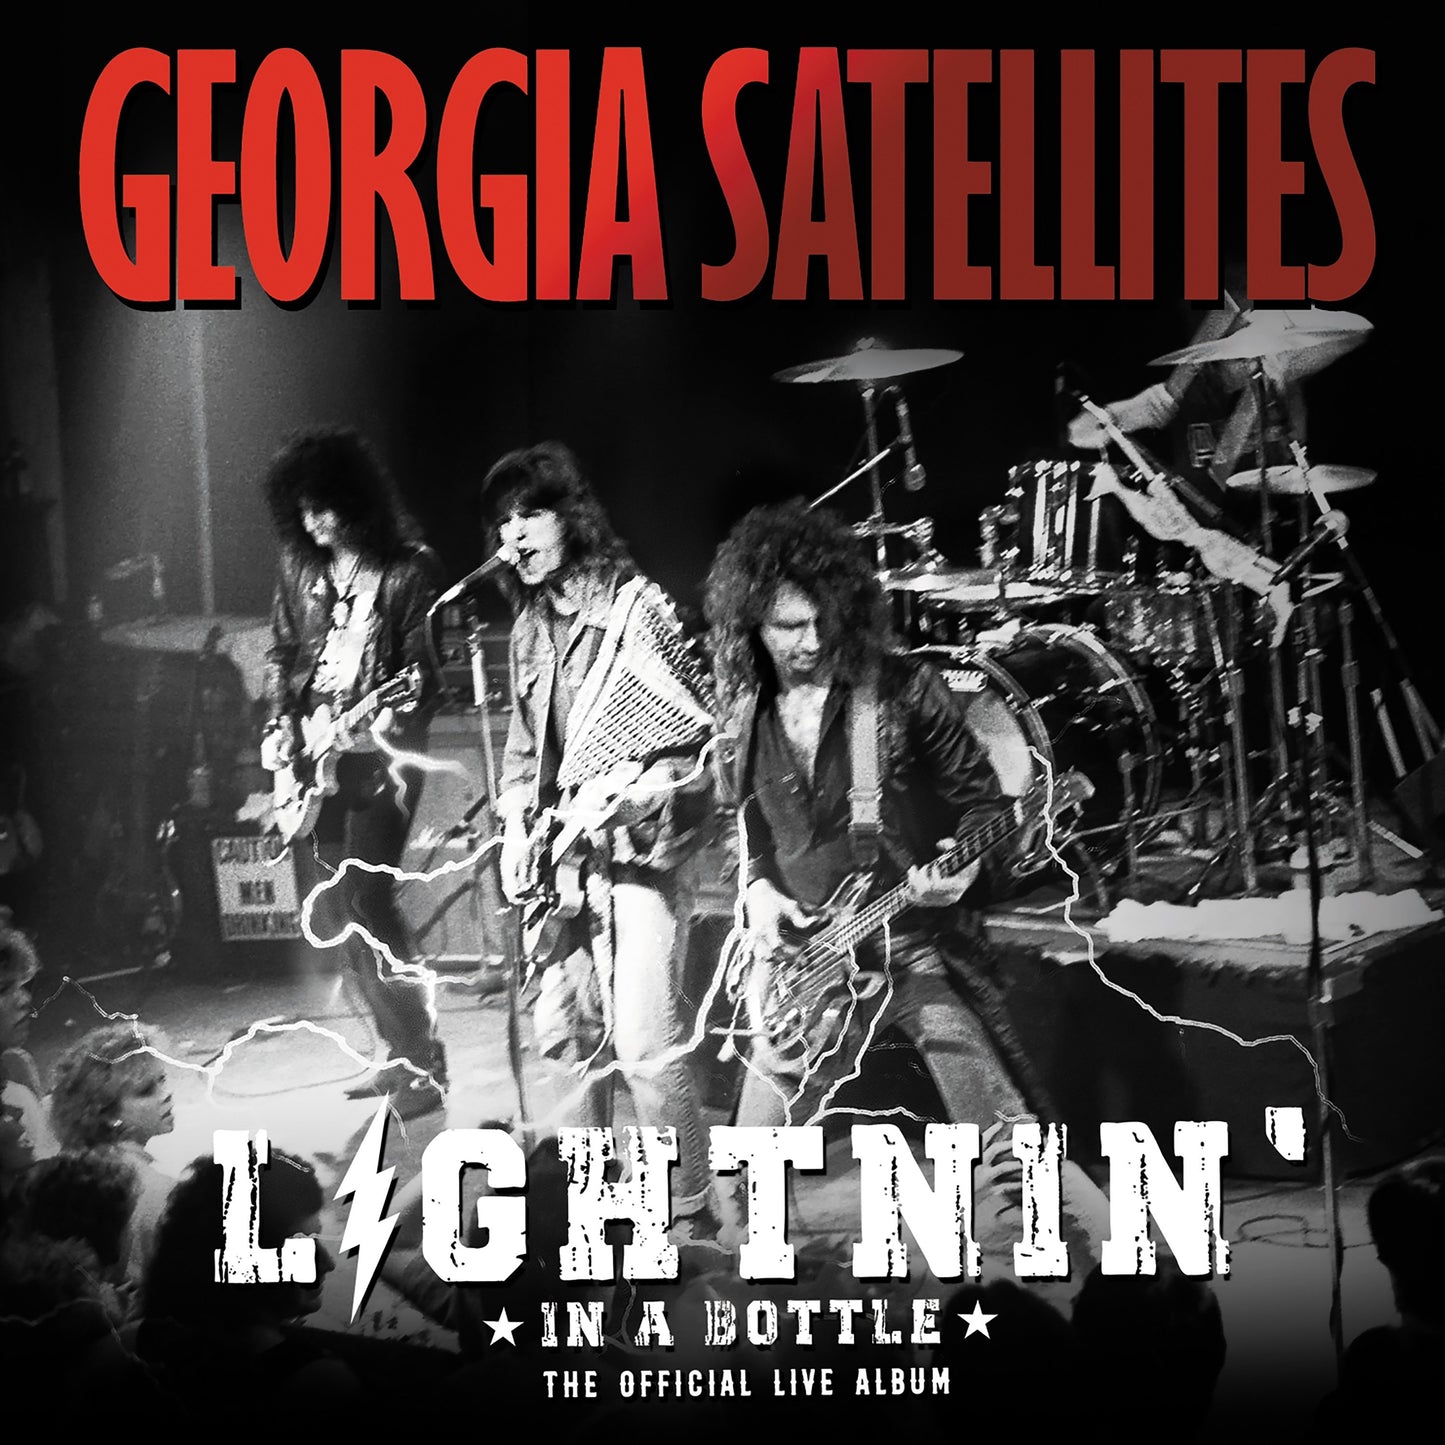 GEORGIA SATELLITES - LIGHTNIN' IN A BOTTLE: THE OFFICIAL LIVE ALBUM - VINYL LP